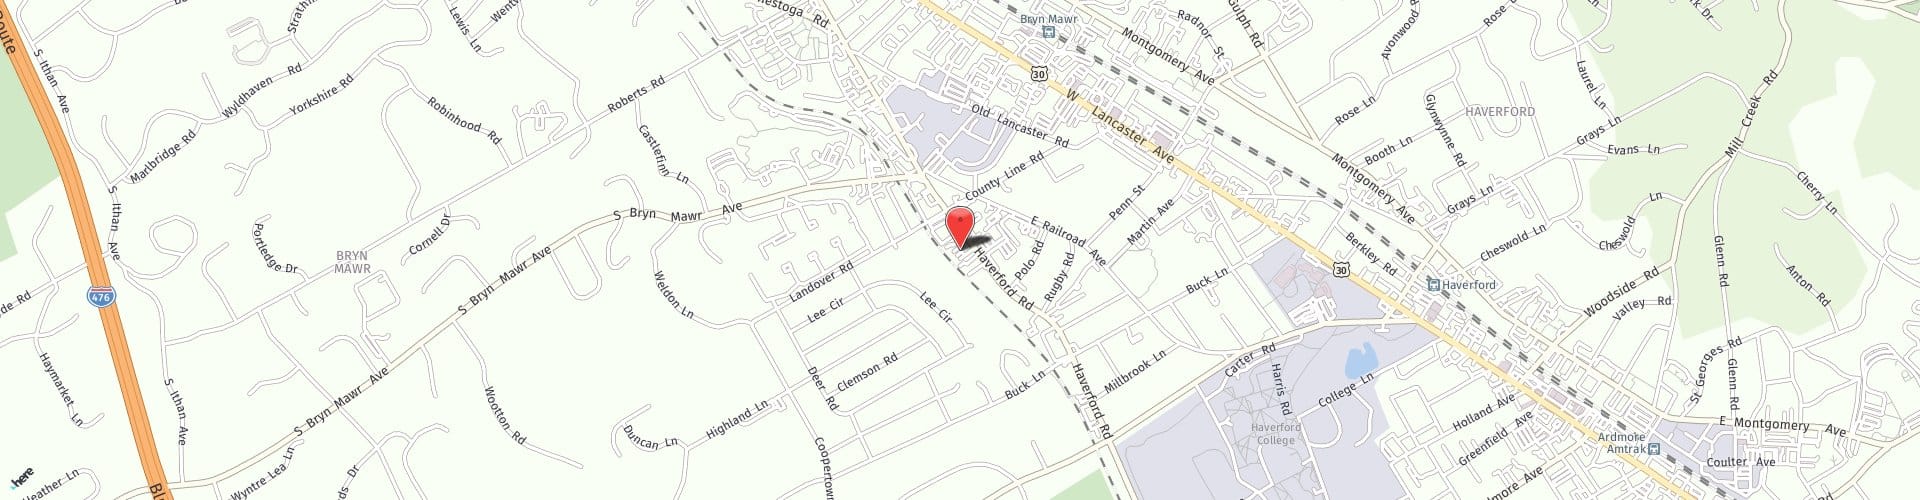 Location Map: 940 Haverford Road Bryn Mawr, PA 19010